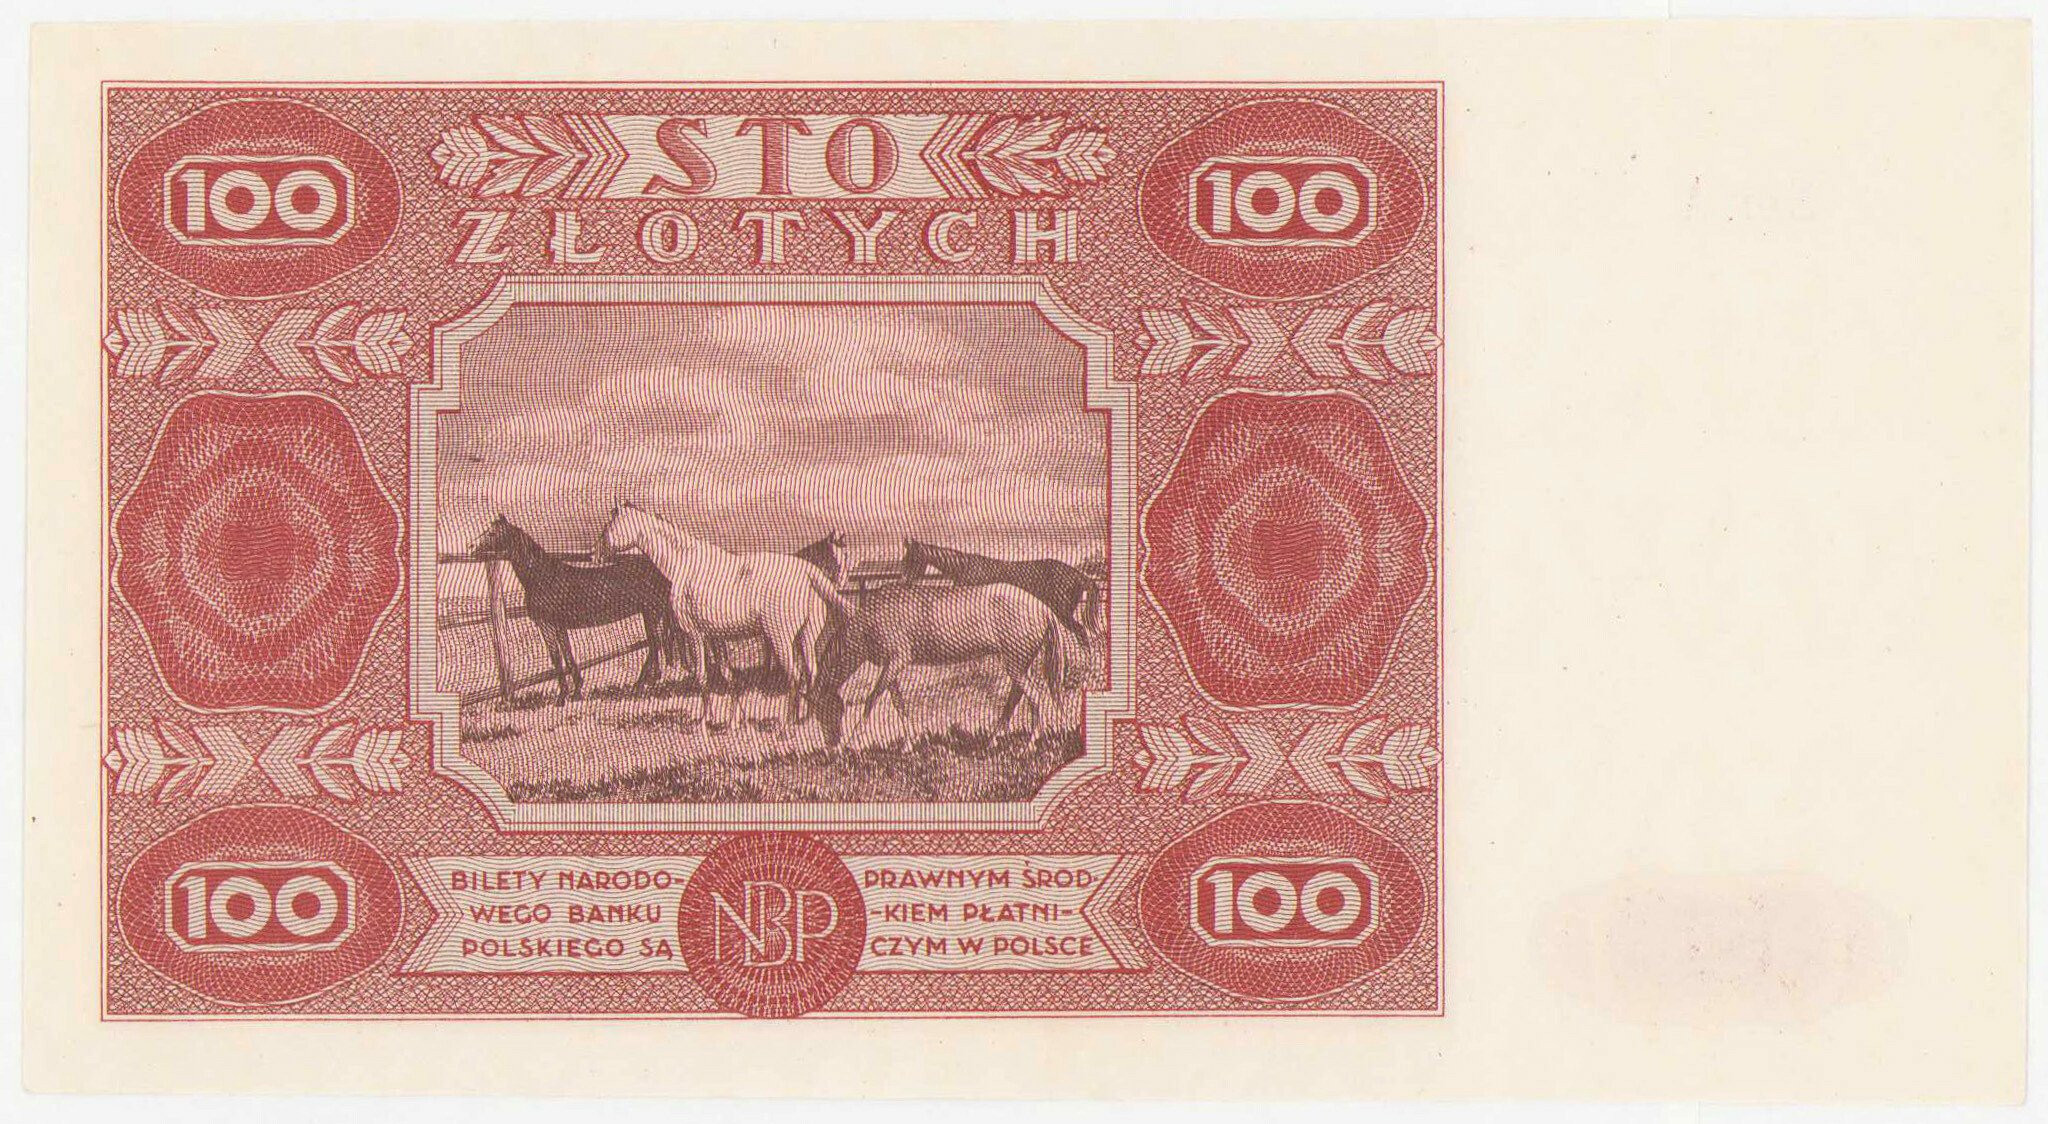 100 złotych 1947 seria A – PIĘKNE